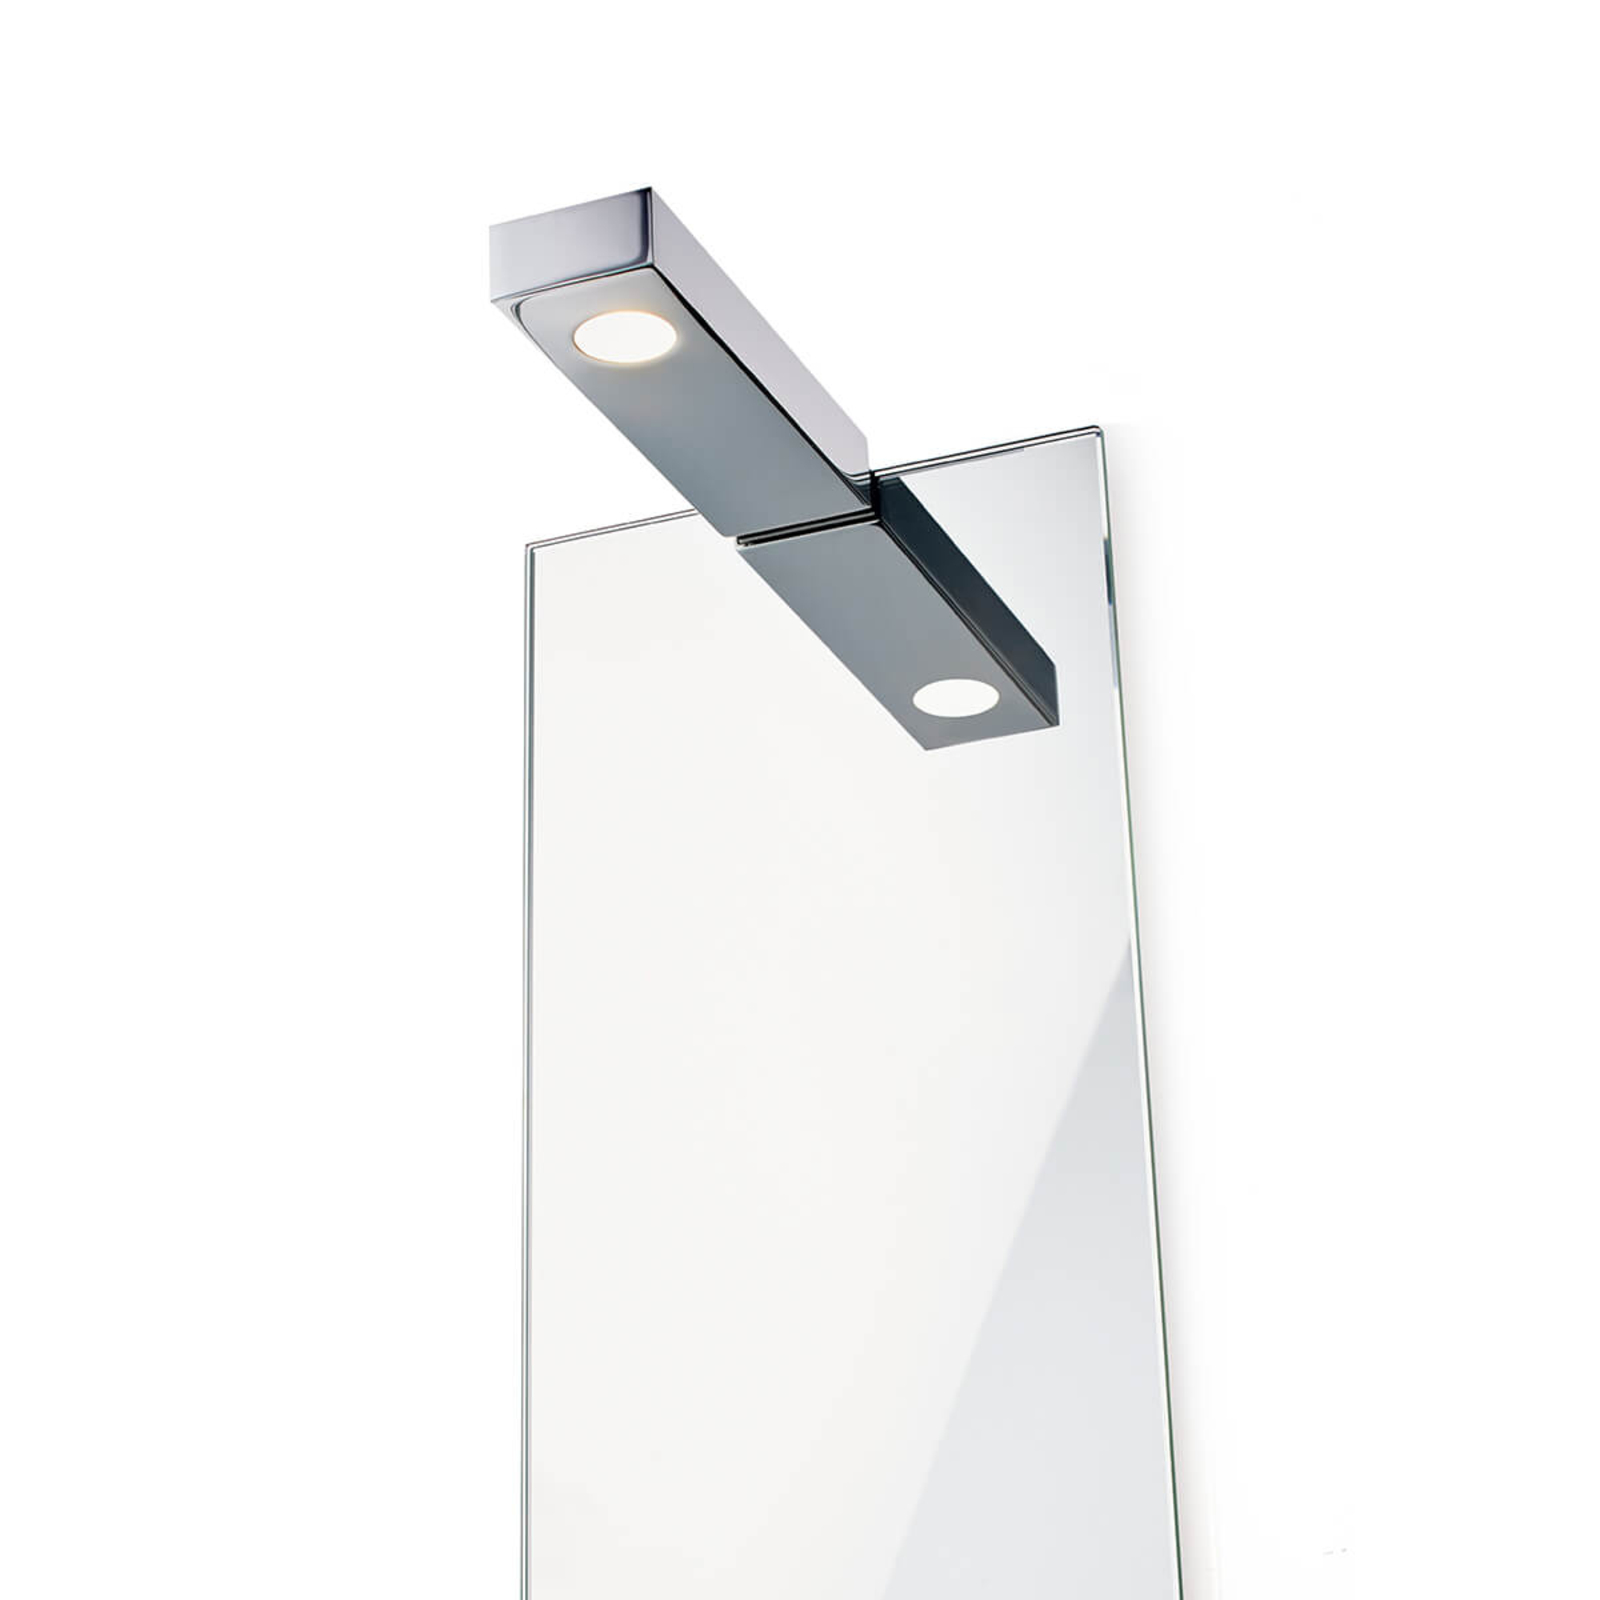 Nástěnné osvětlení zrcadla Flat 2 LED, chrom